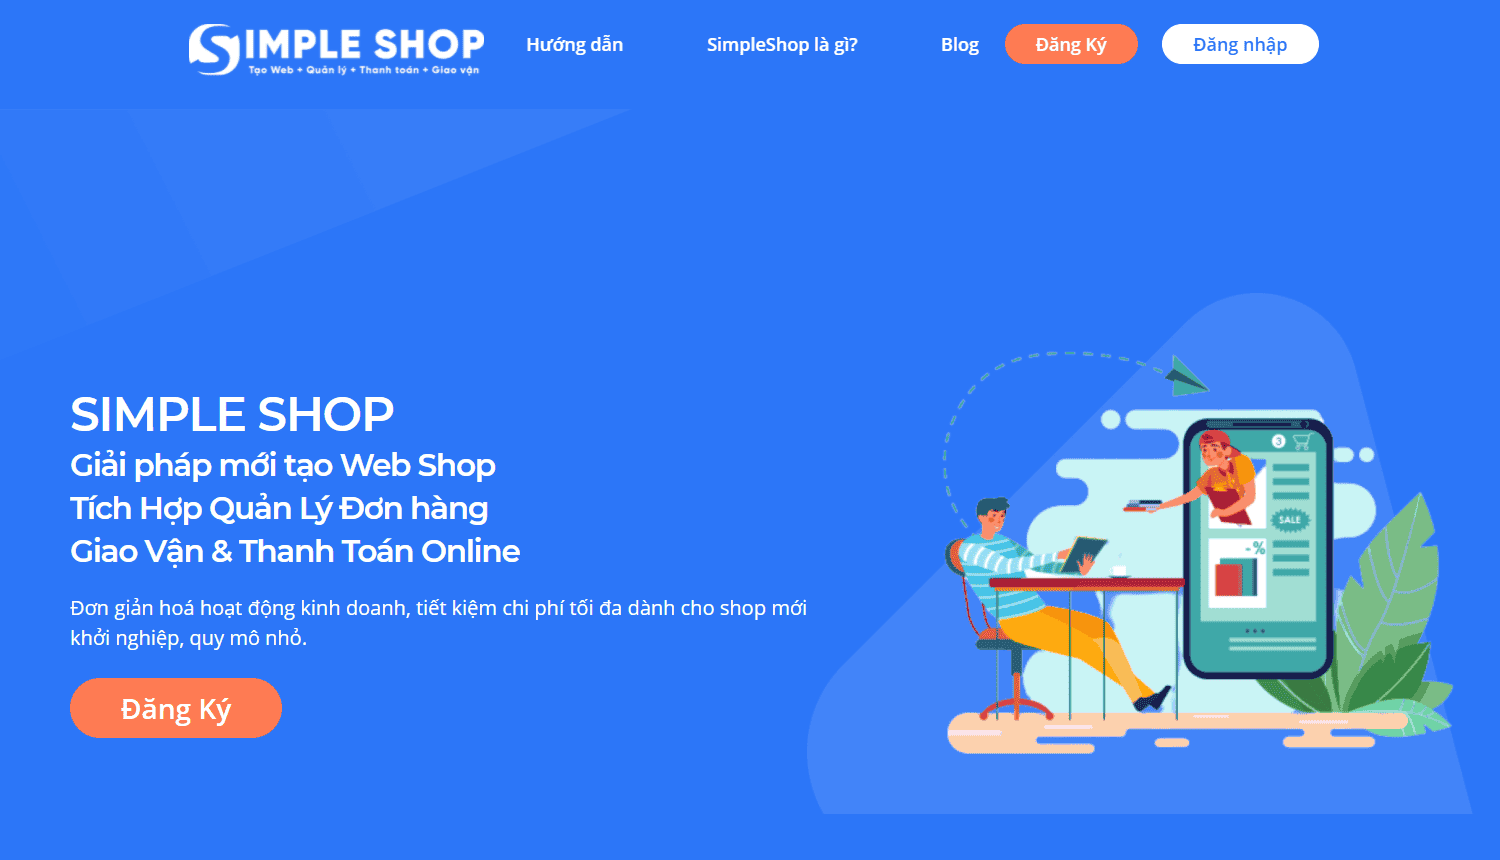 Ưu điểm và nhược điểm của nền tảng tạo web bán hàng Simple Shop